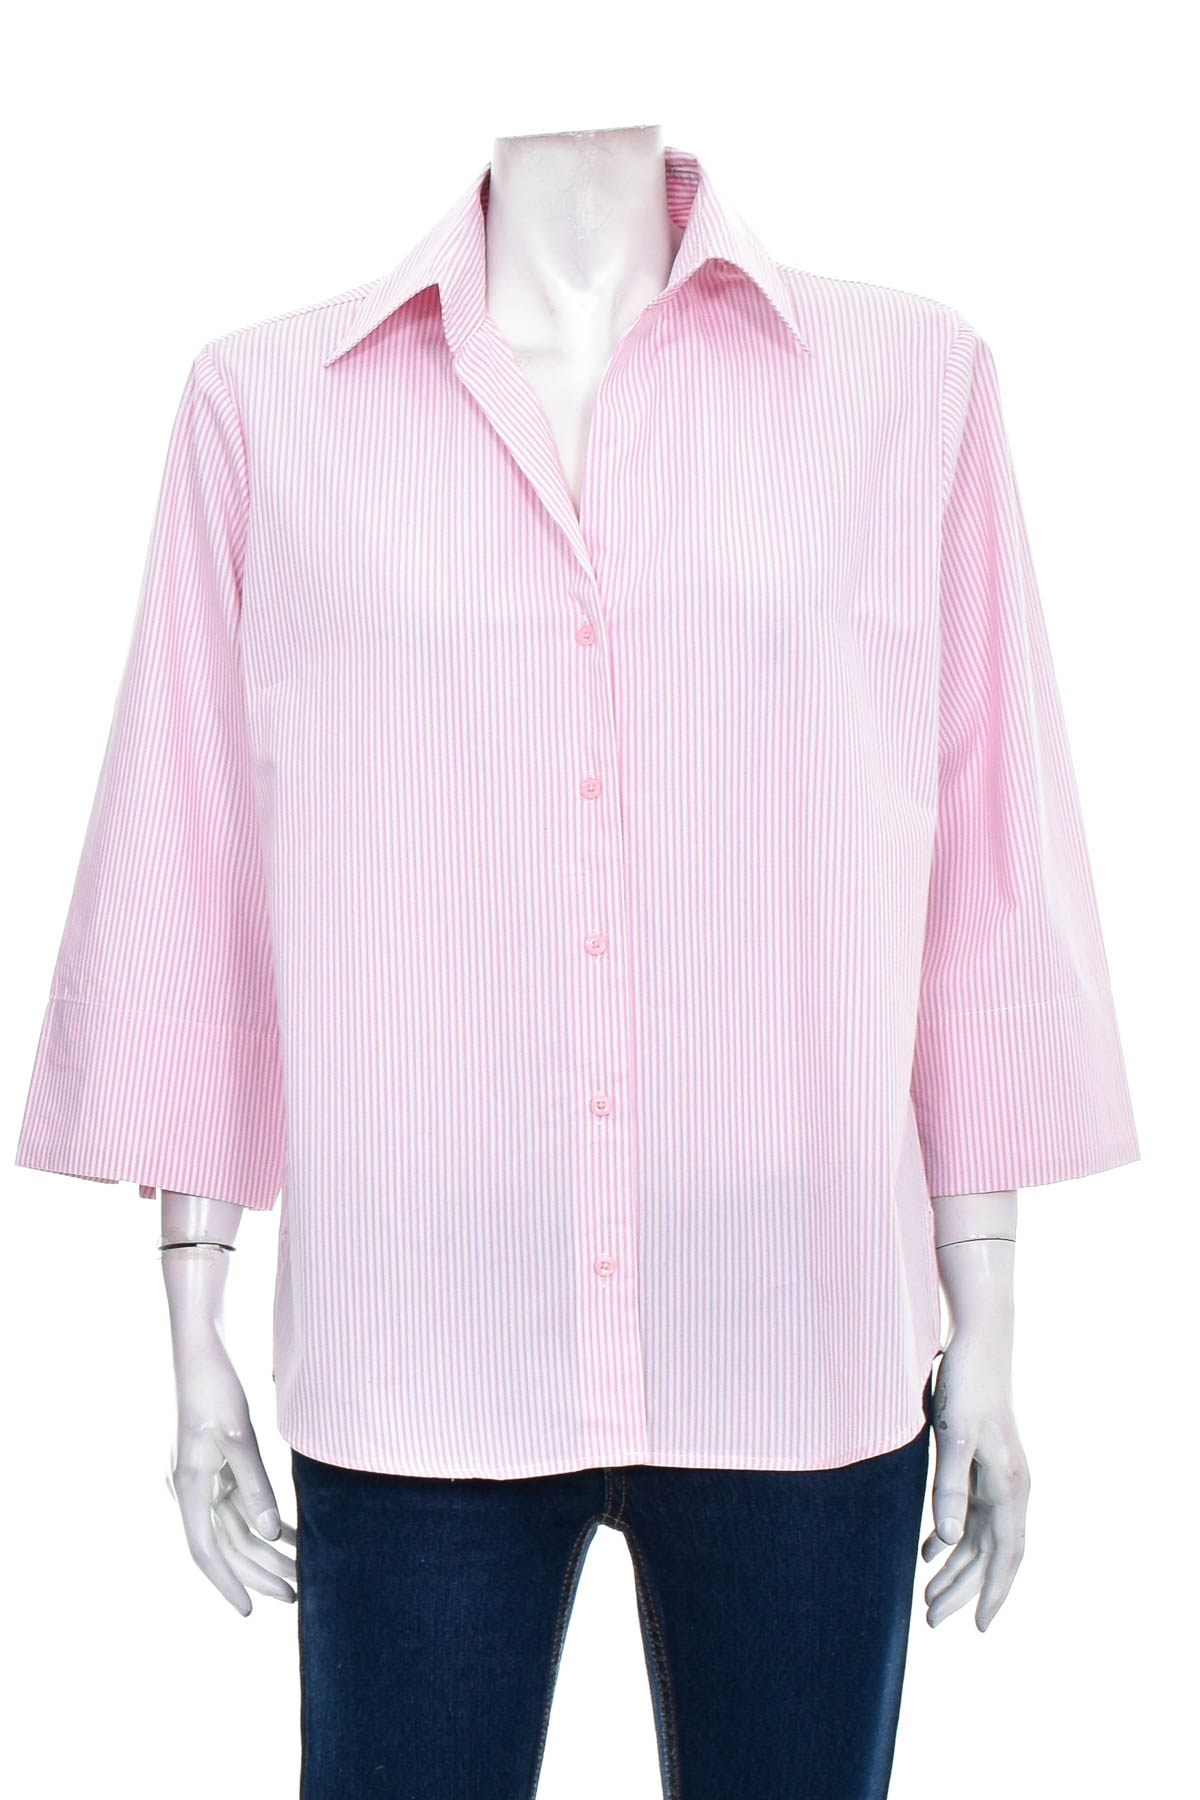 Γυναικείо πουκάμισο - brookshire - 0